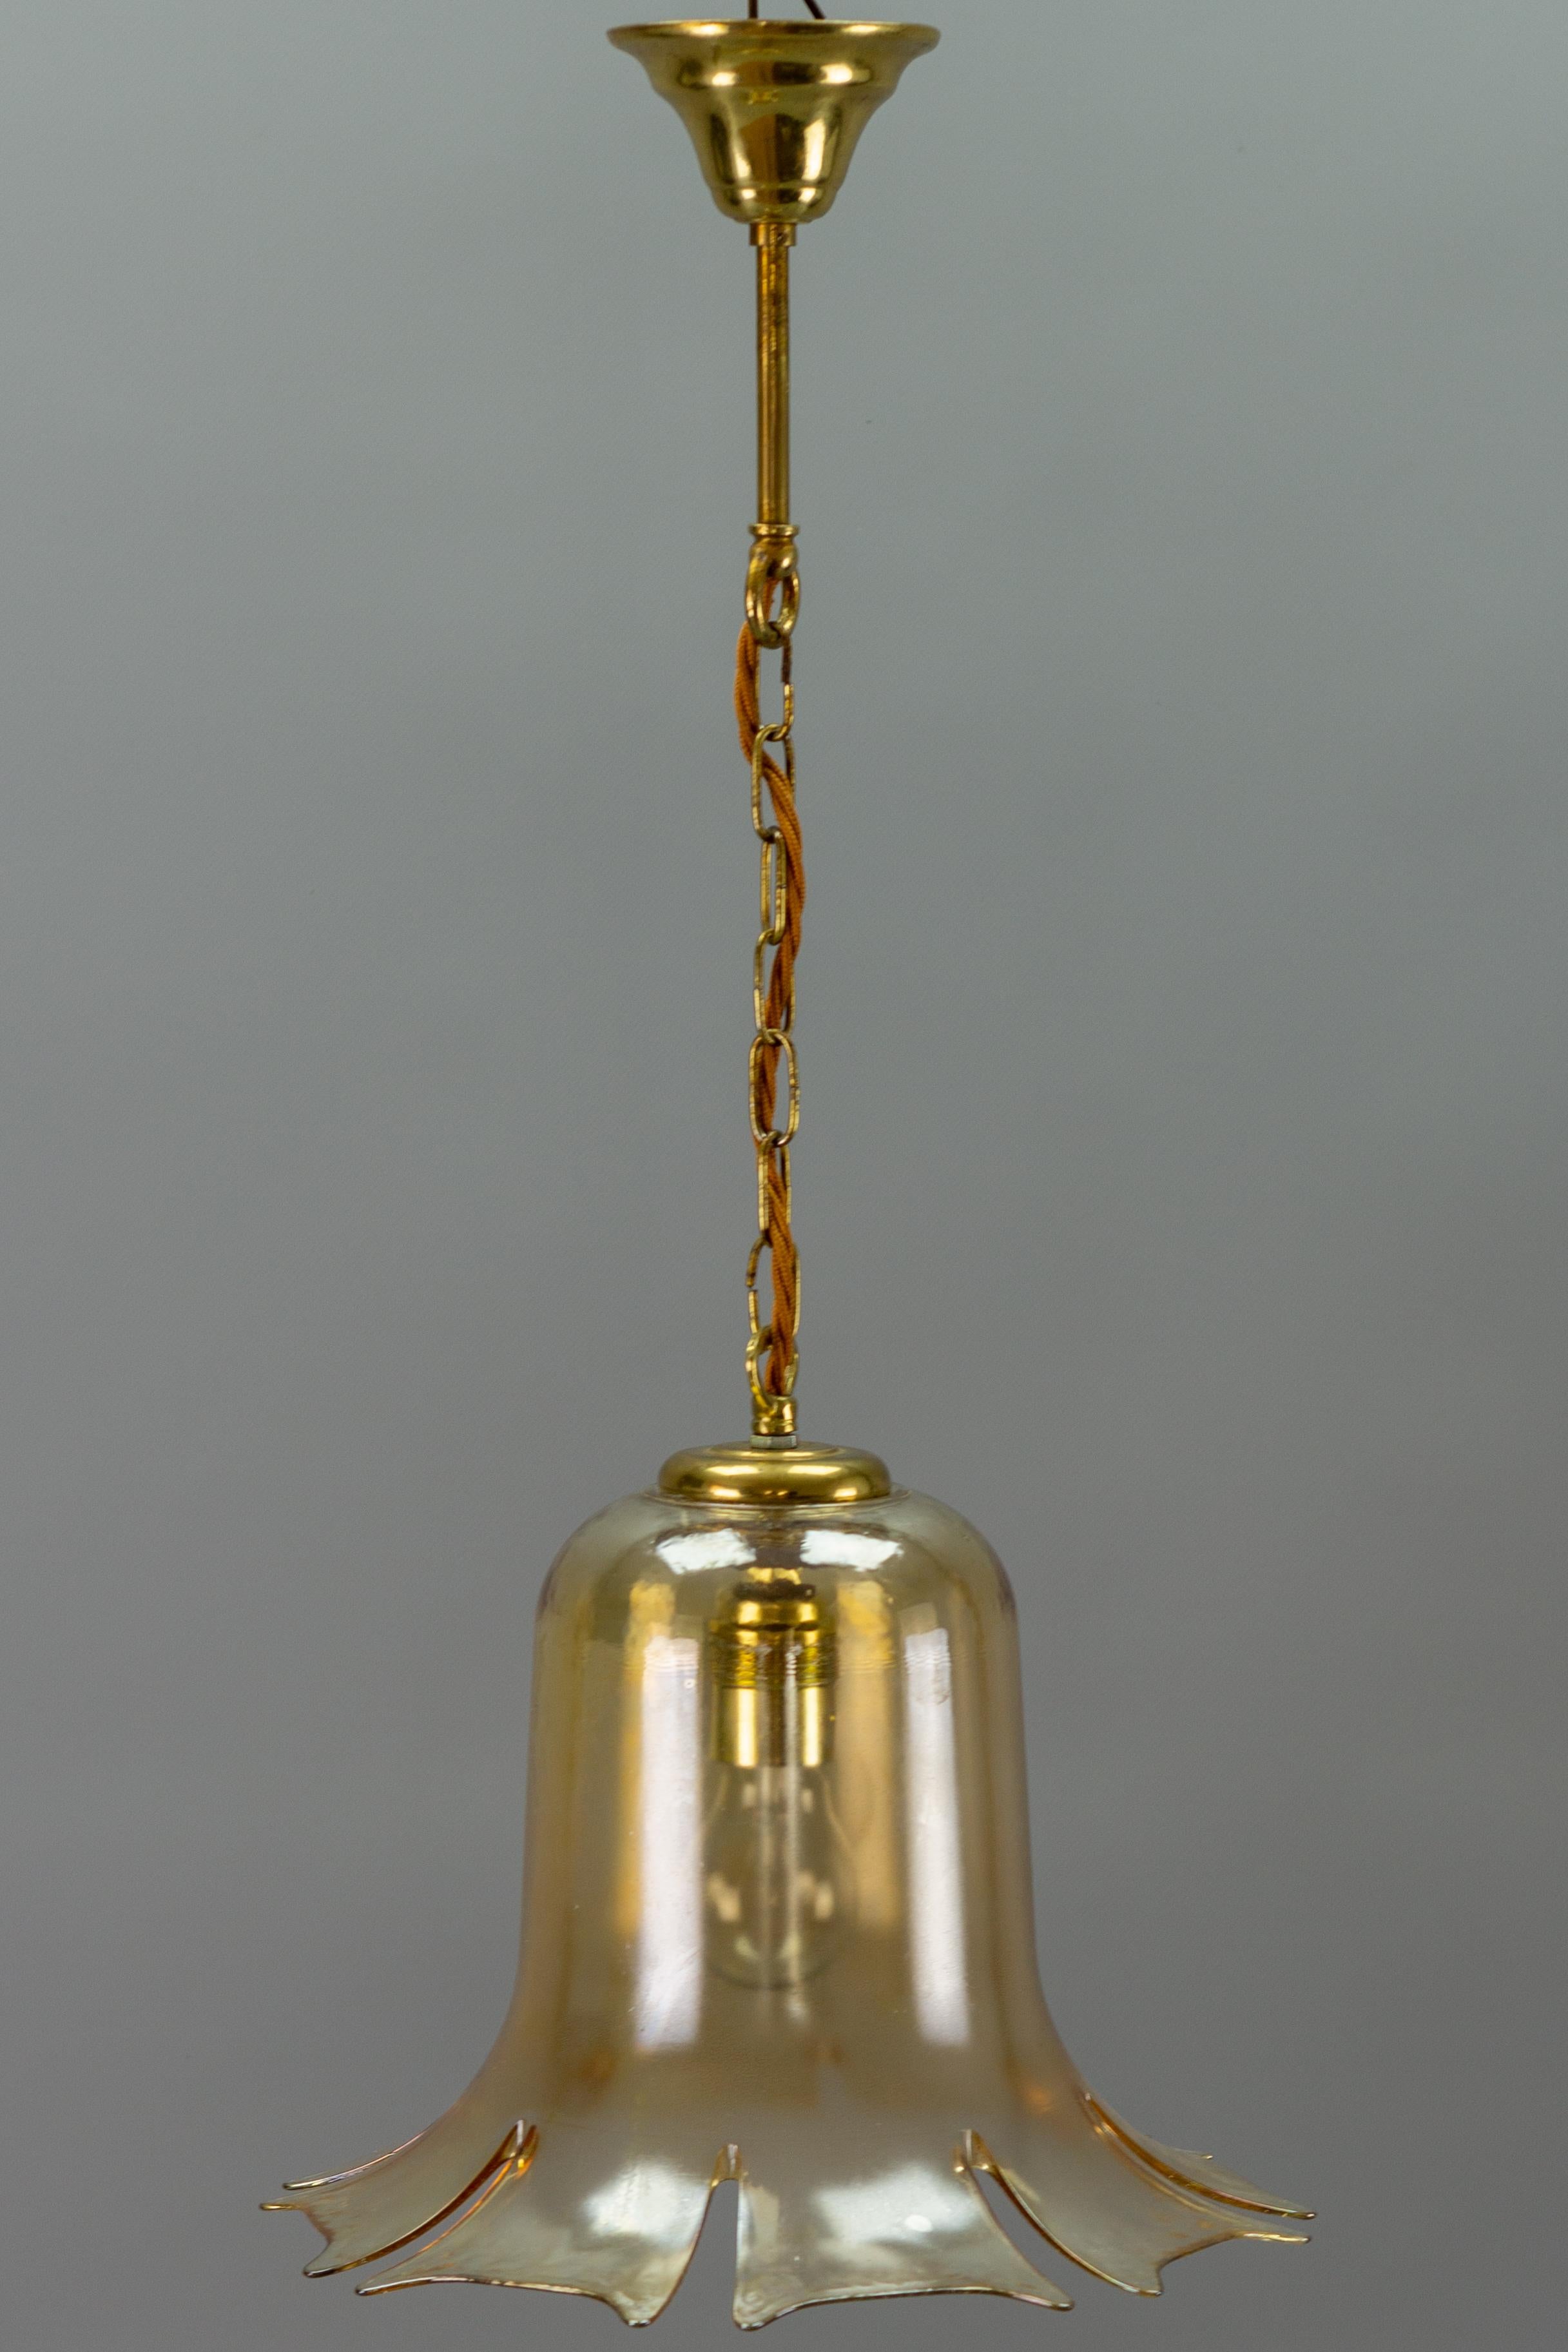 Vintage mid-century glockenförmige bernsteinfarbene transparente Glas-Pendelleuchte, Dänemark, 1960er Jahre.
Abmessungen: Höhe: 63 cm / 24,8 in; Durchmesser: 30 cm / 11,81 in.
Eine Fassung für Glühbirnen der Größe E27 (E26).
Die Leuchte ist voll